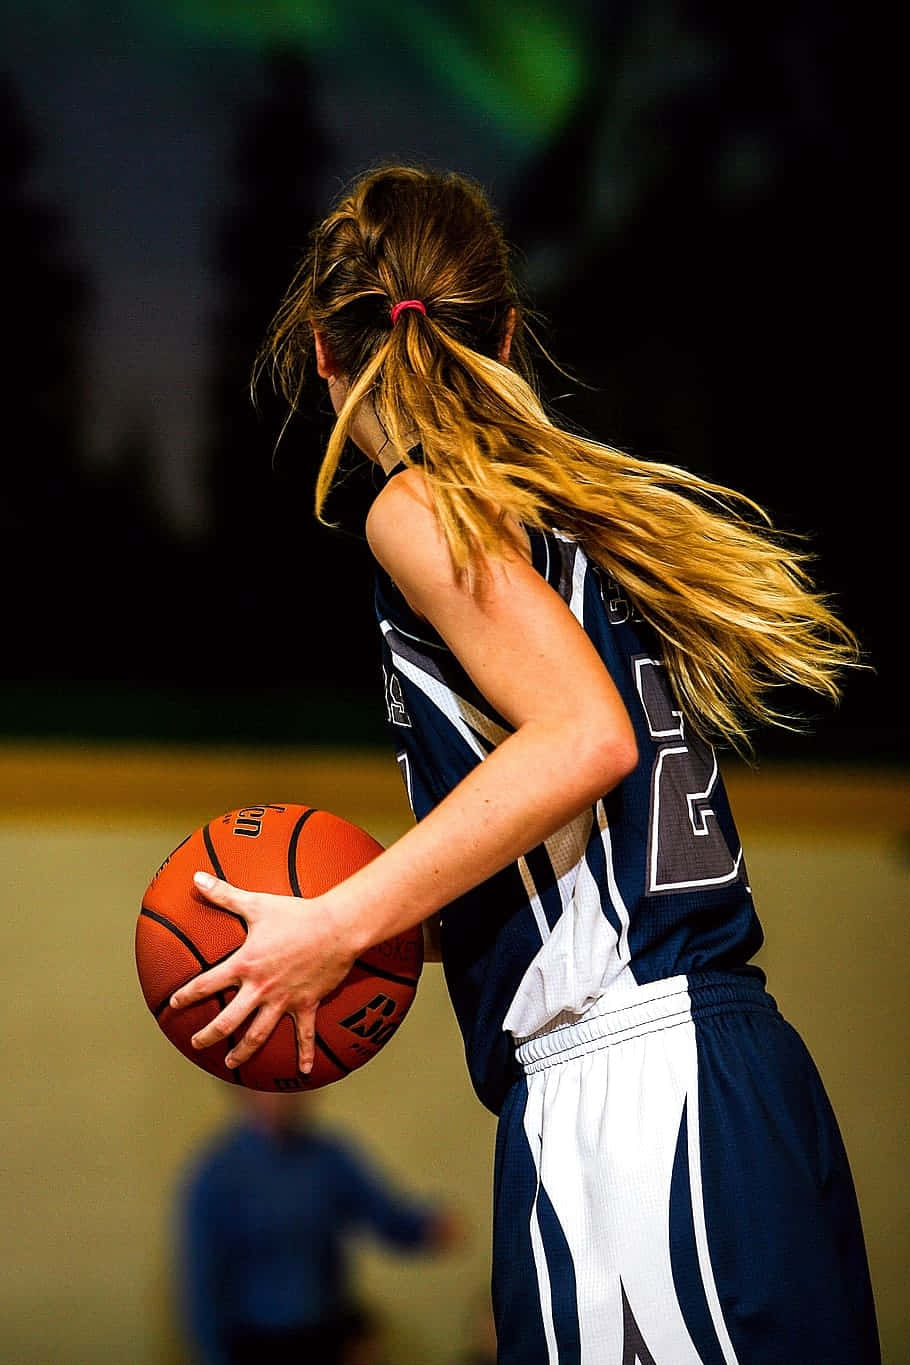 Basketball Girl In Action.jpg Wallpaper